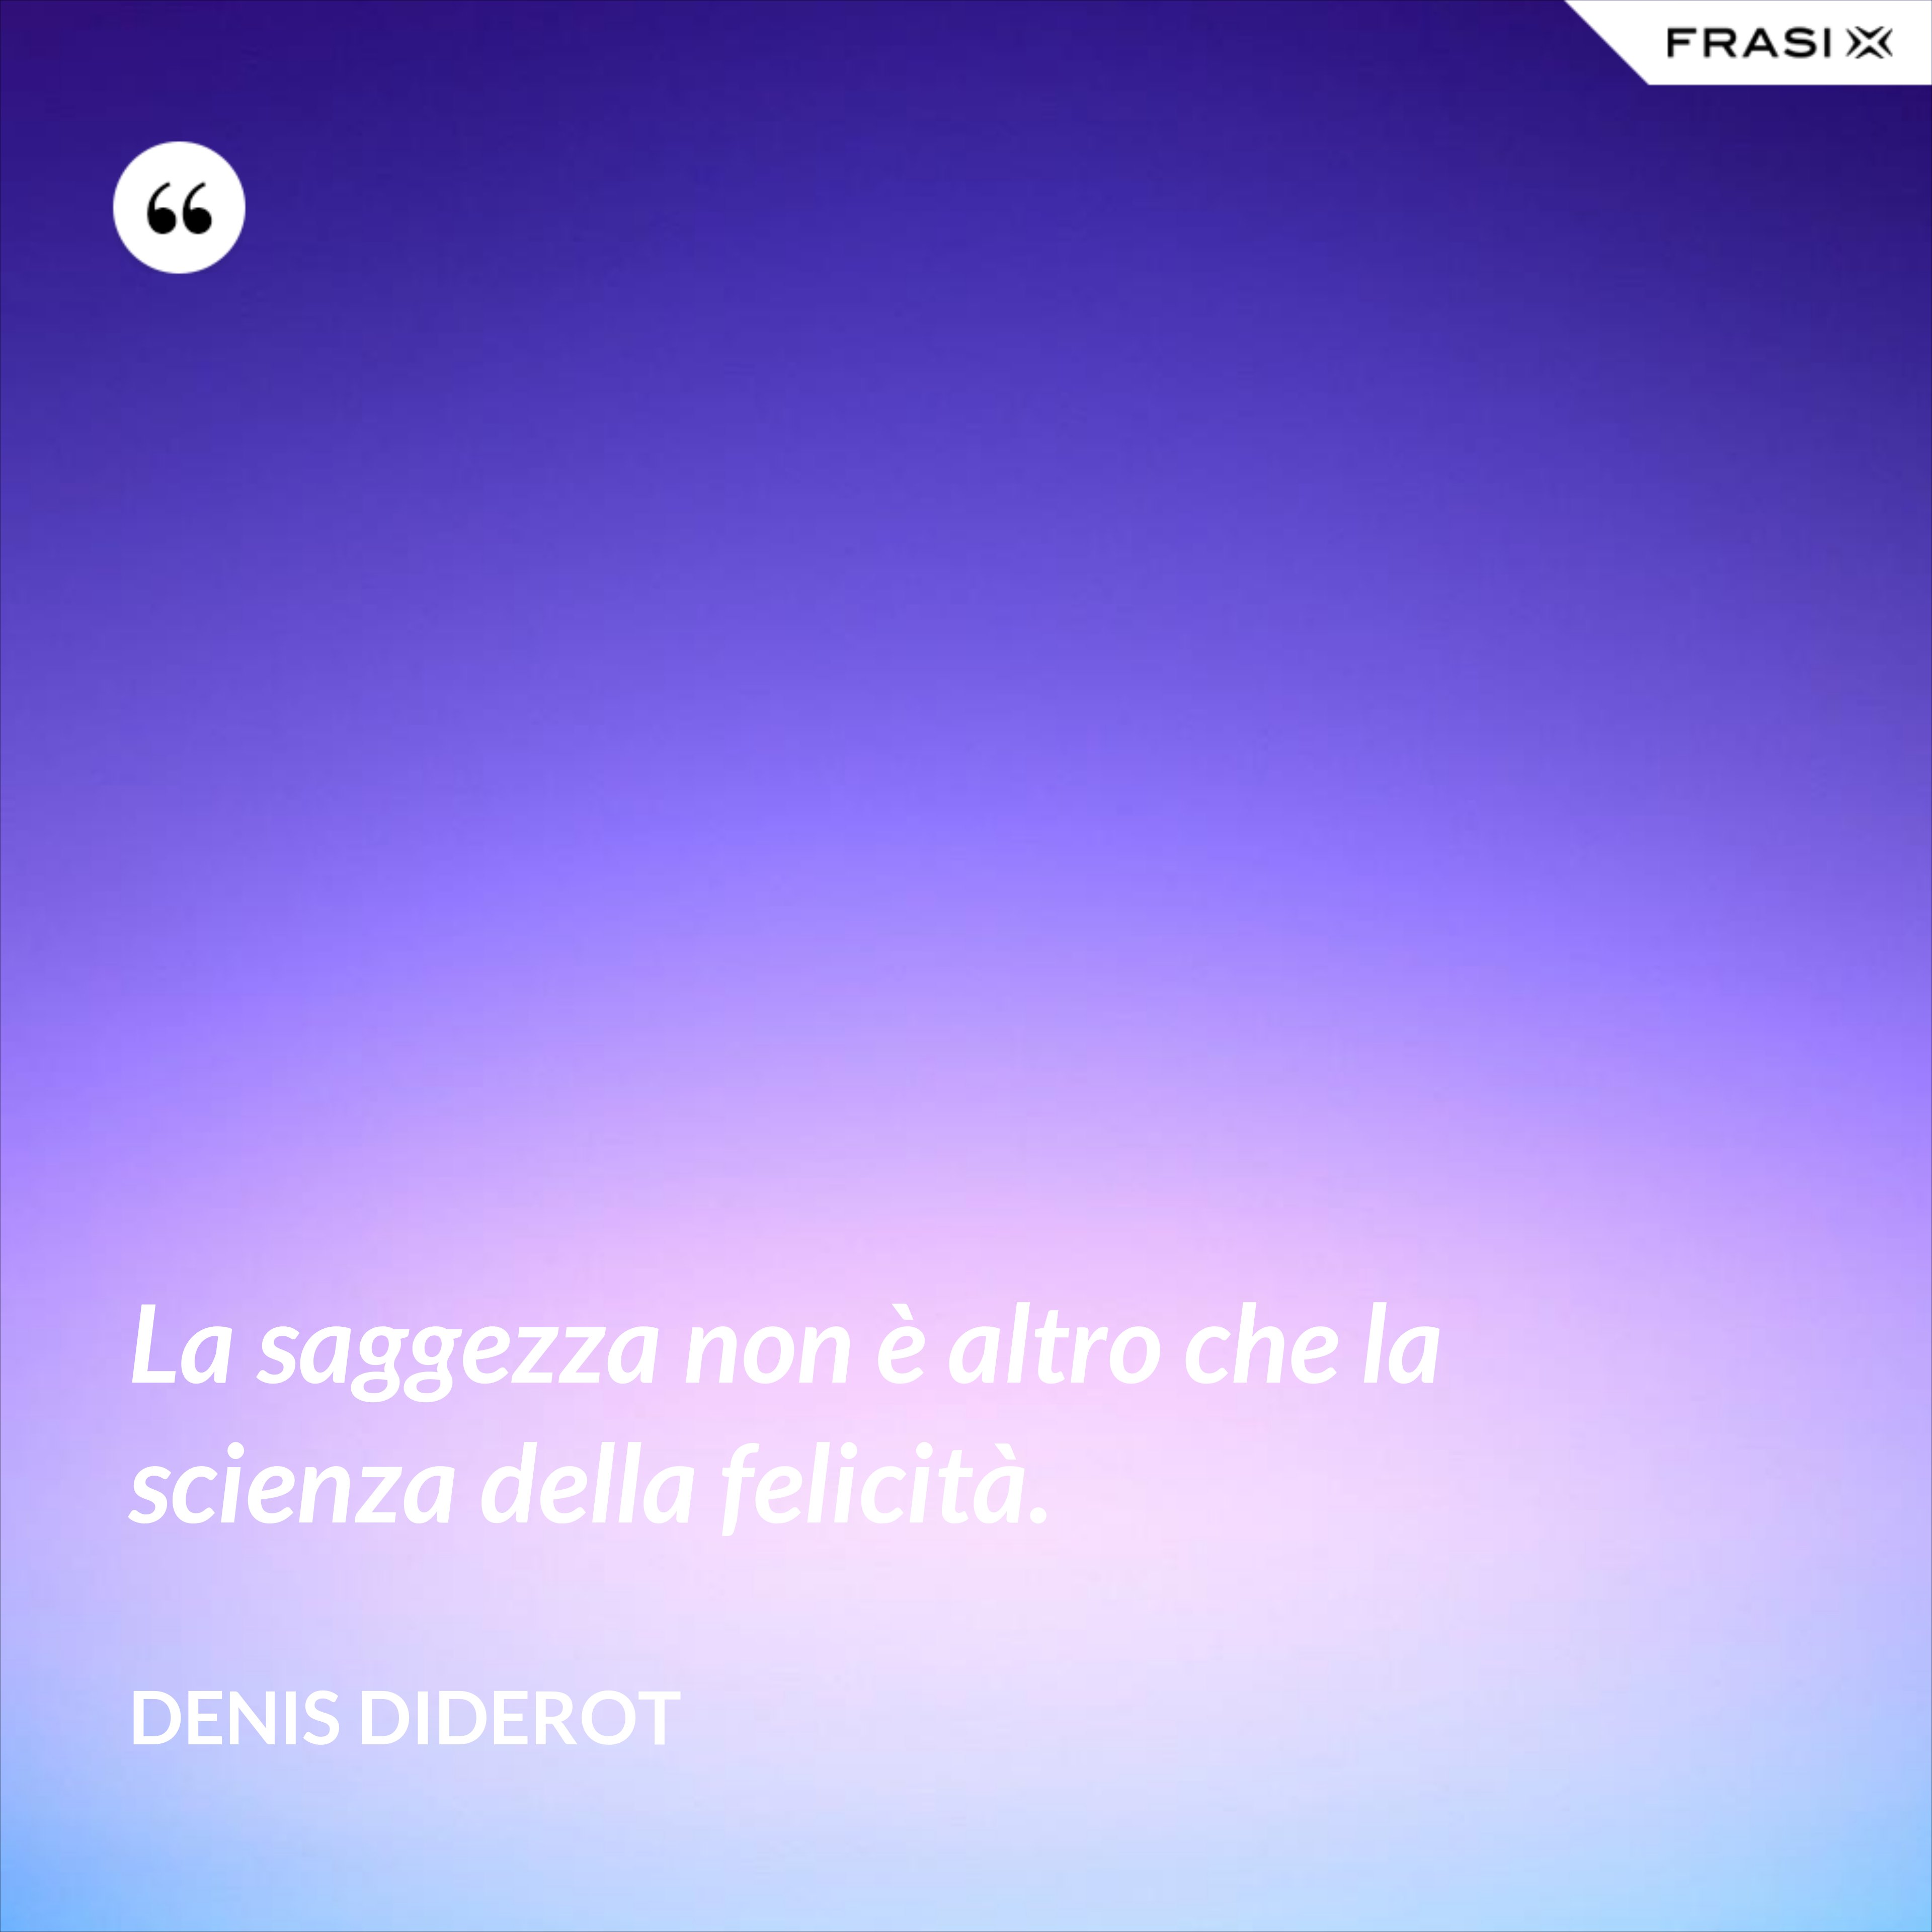 La saggezza non è altro che la scienza della felicità. - Denis Diderot